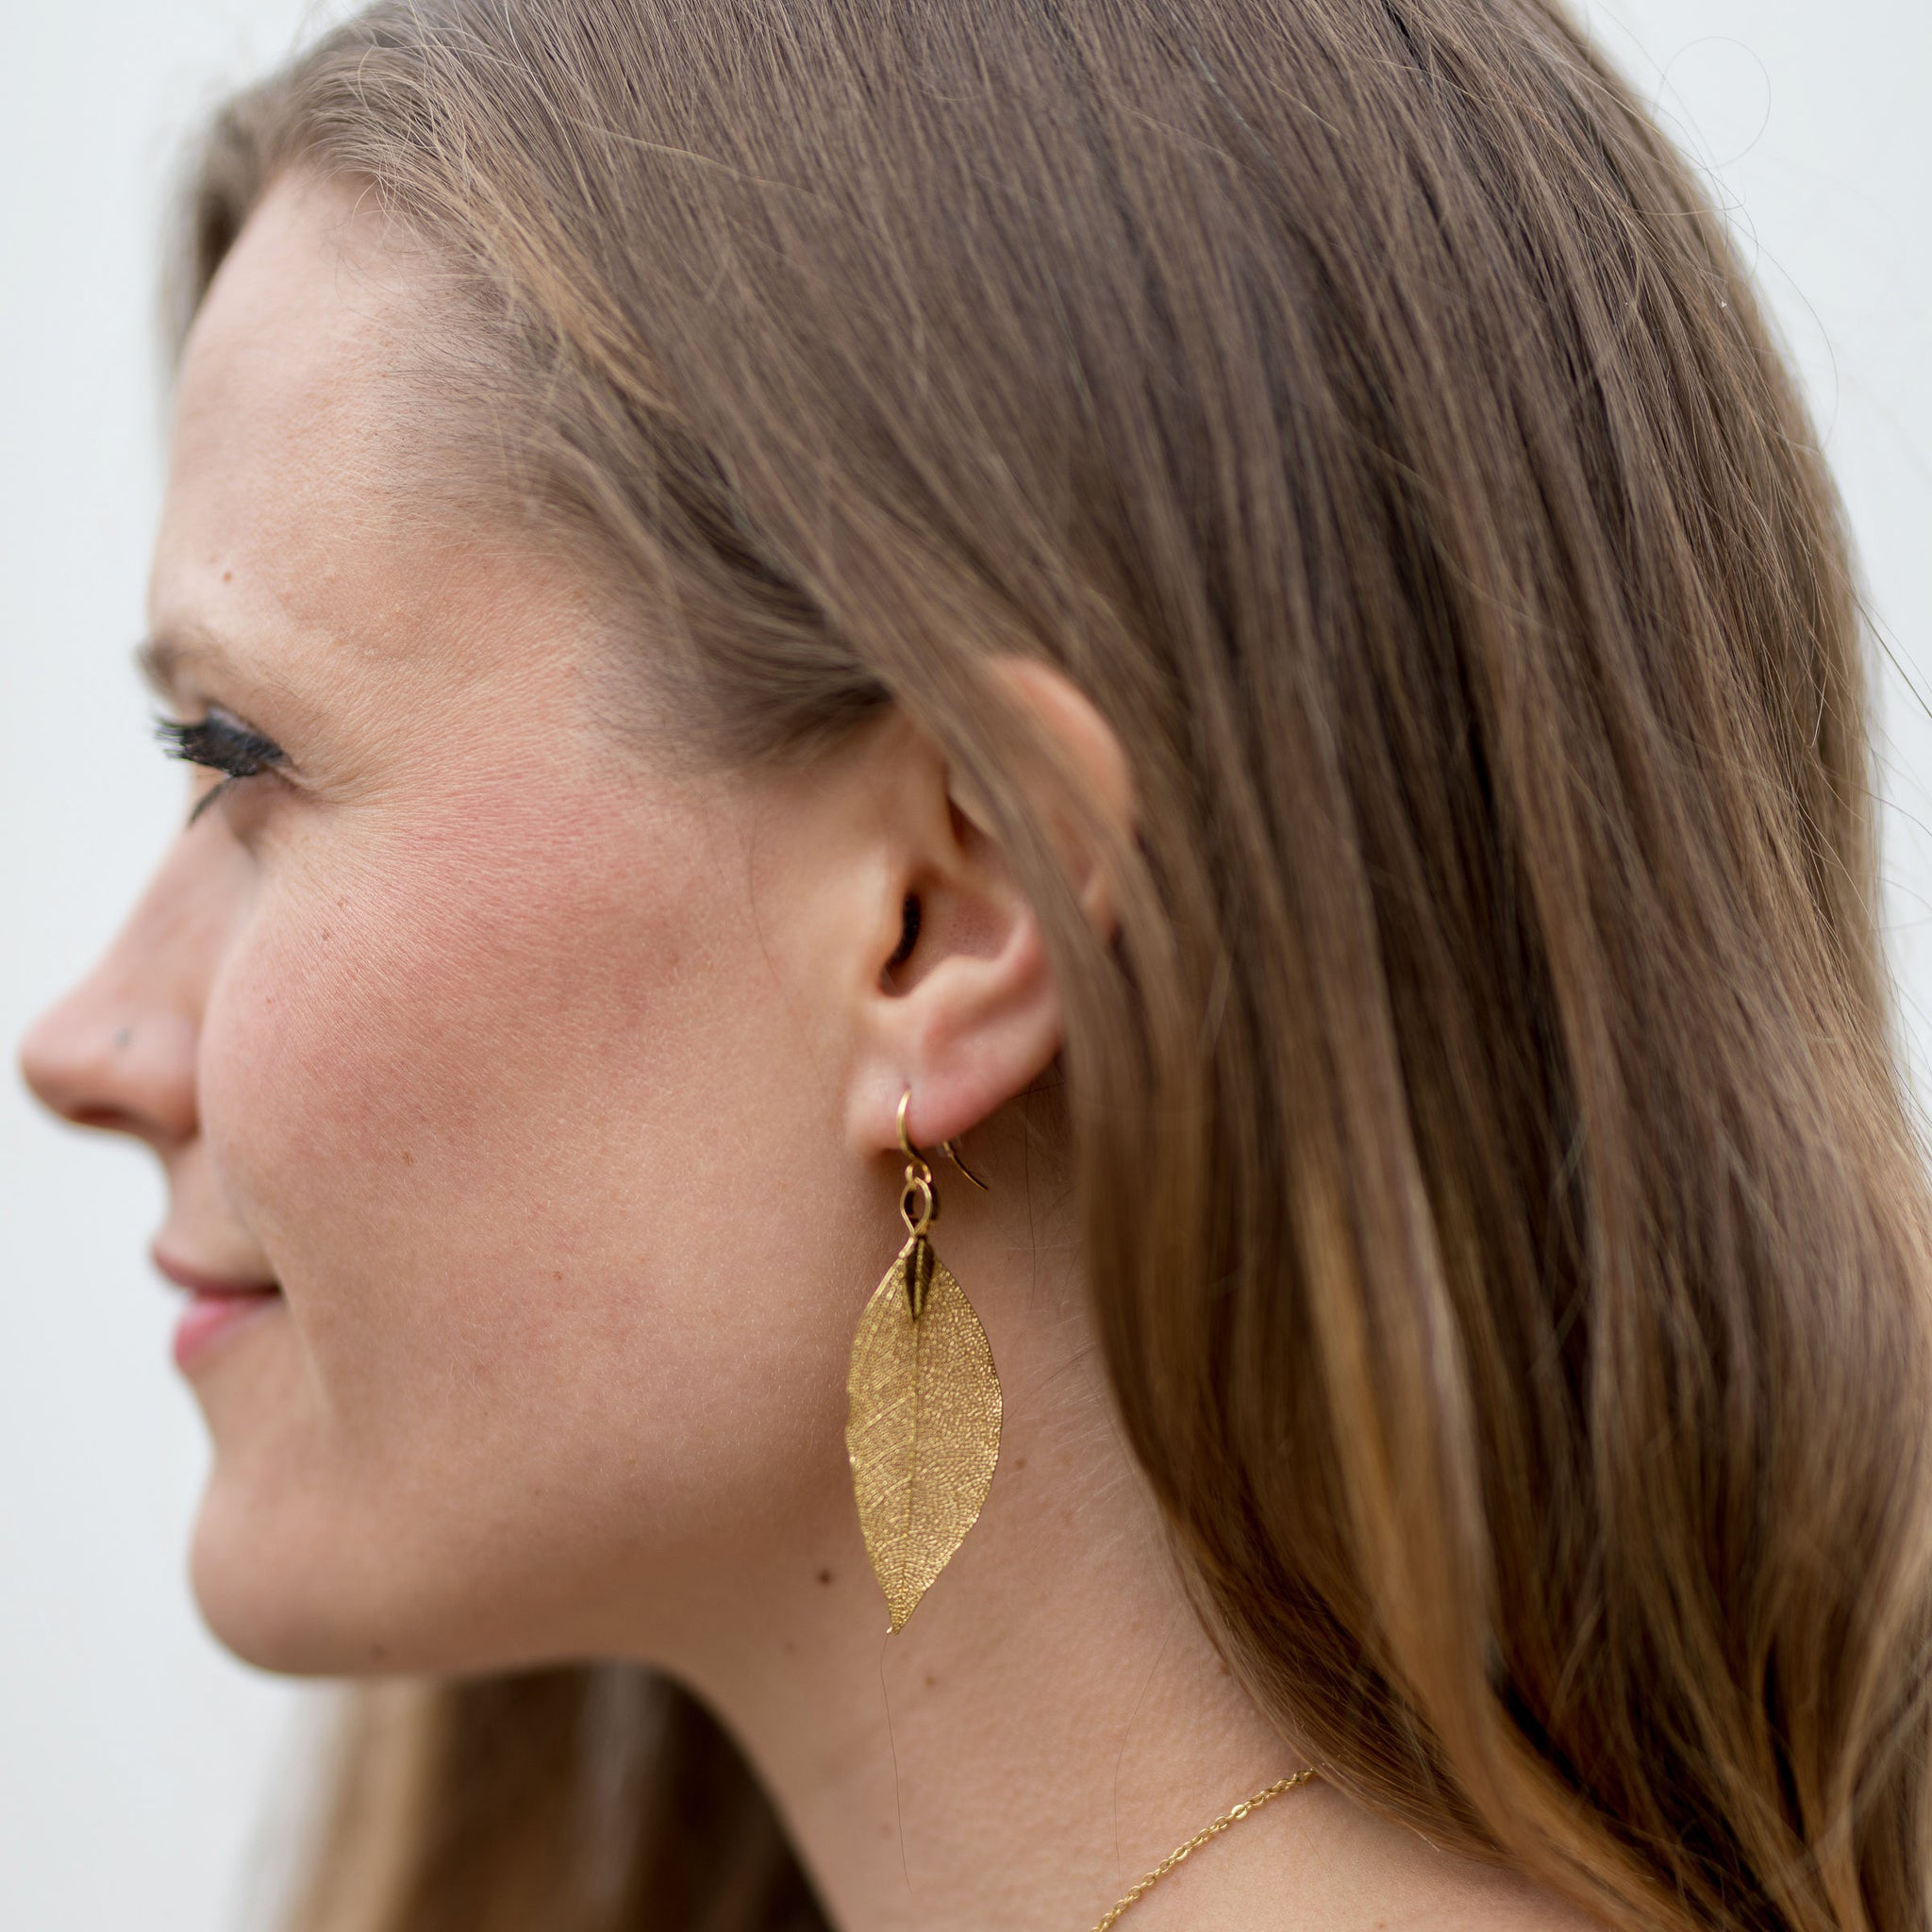 Leaf Stud Earrings in Gold or Silver - Handmade in Britain